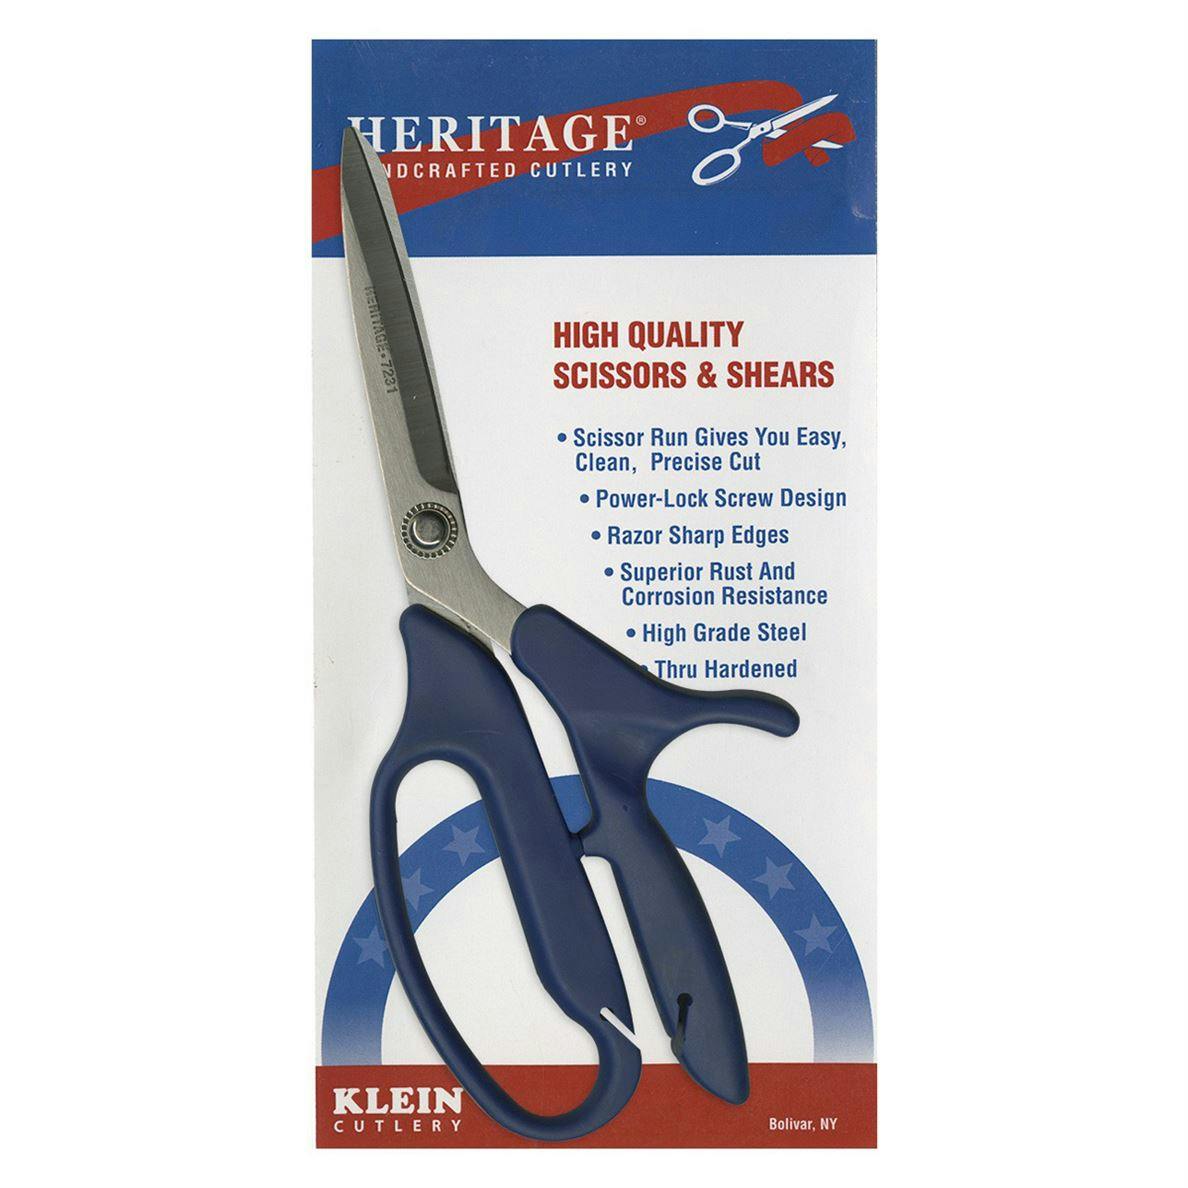 Heritage Scissors in package